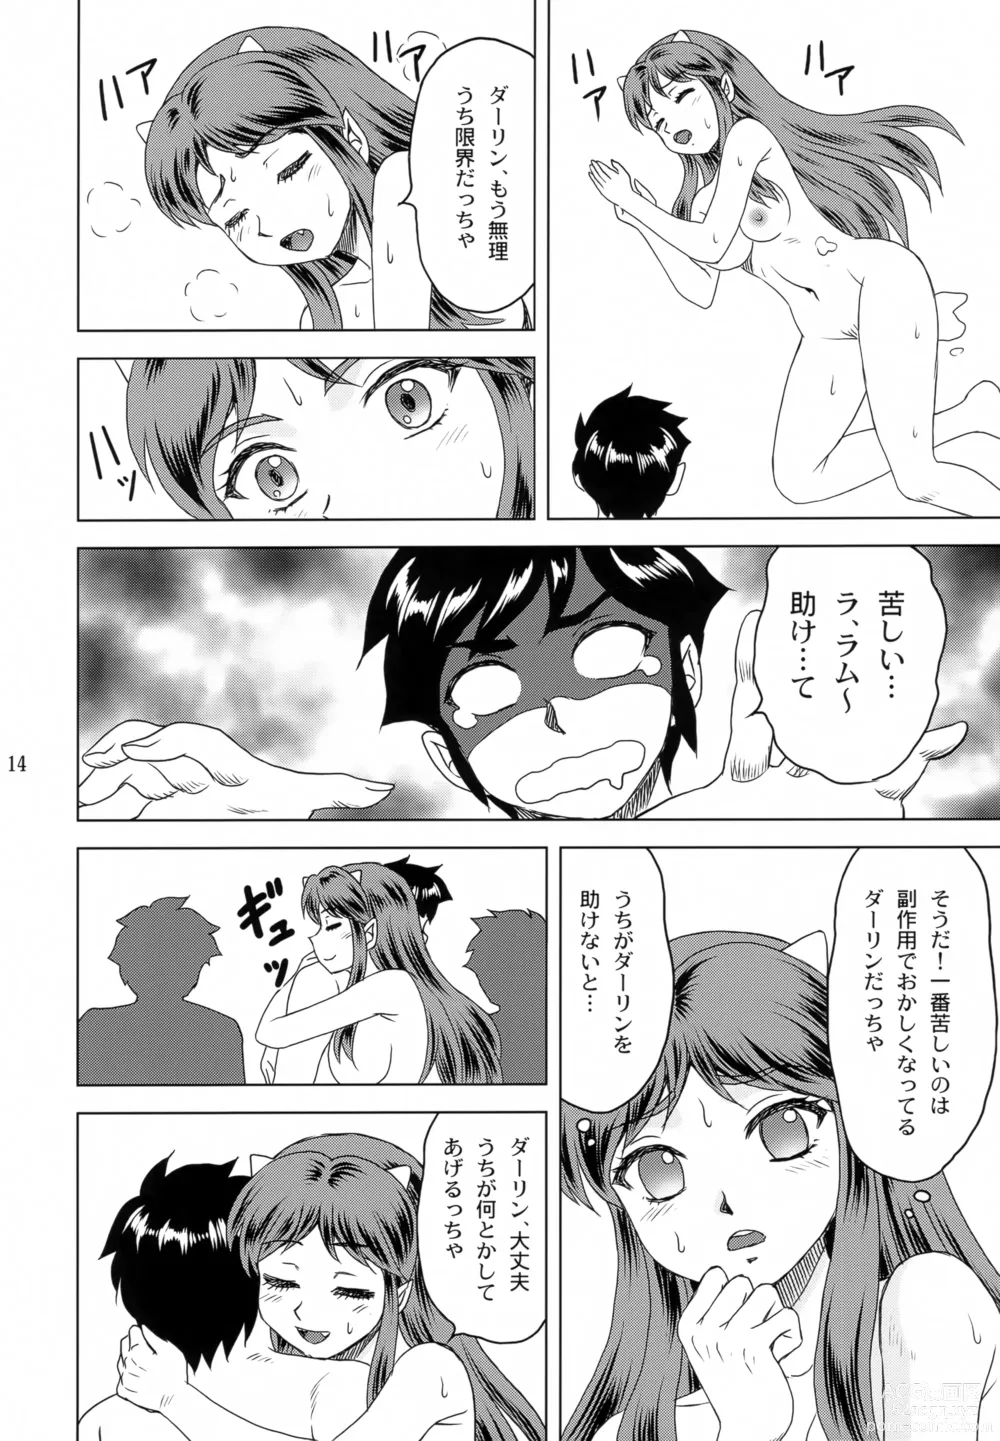 Page 13 of doujinshi Darling ga Ippai